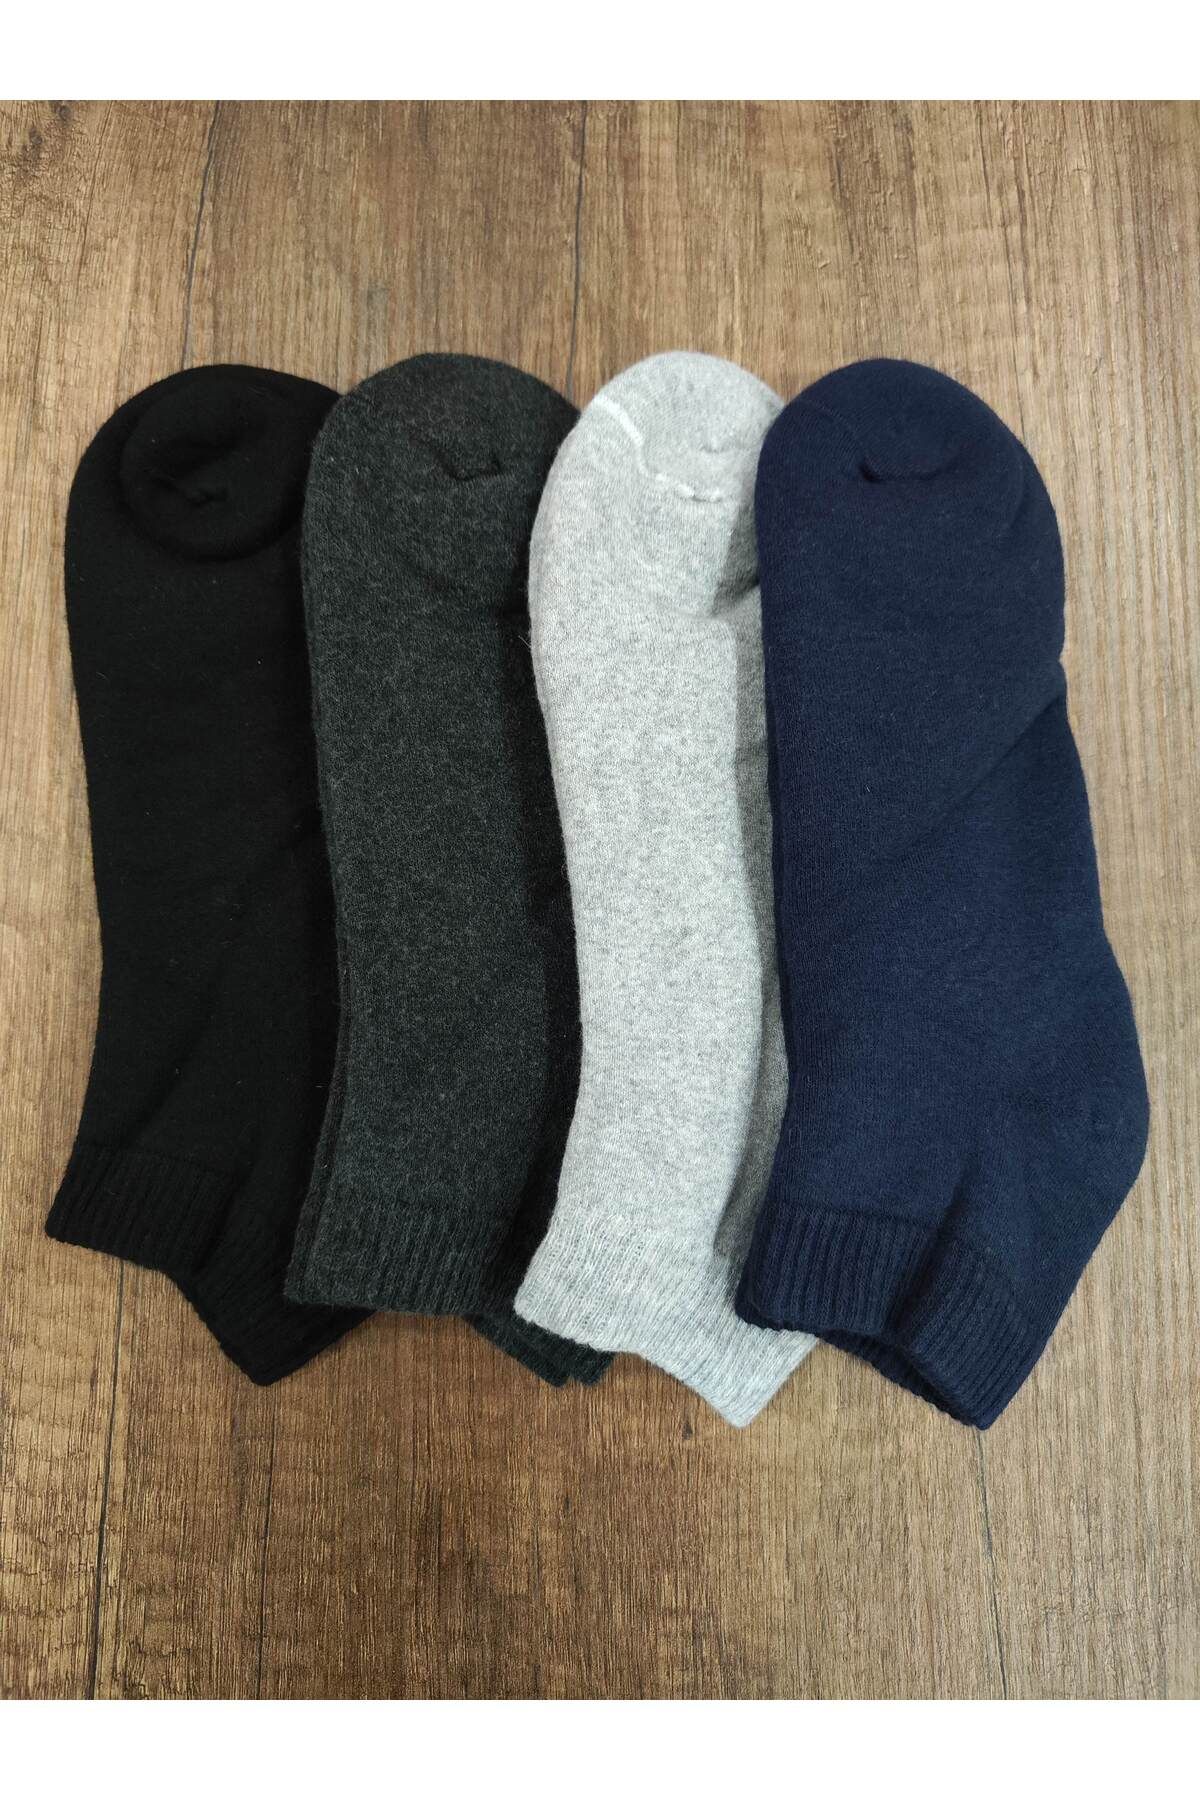 Leement socks Unisex 4 Çift Kalın Kışlık Havlu Kısa Patik Çorap